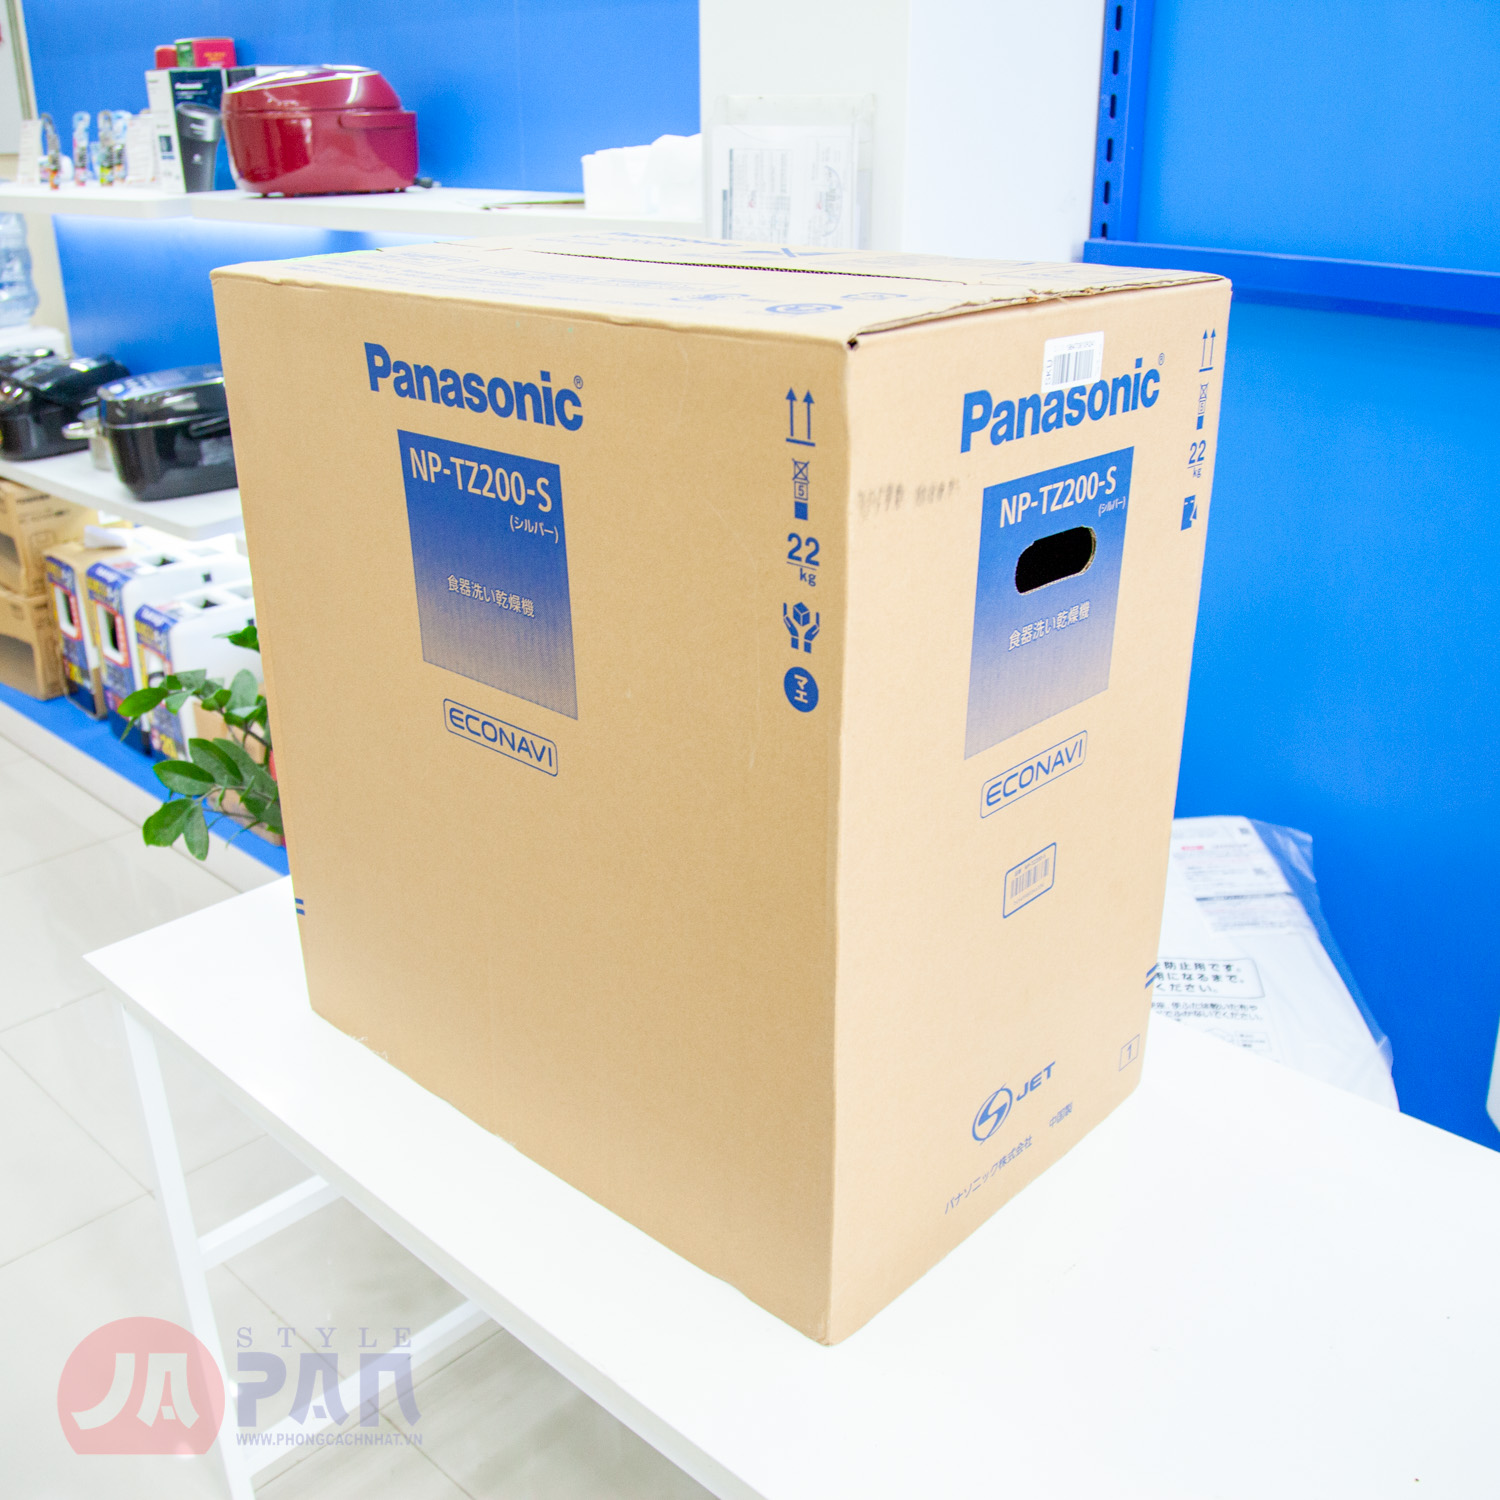 Máy rửa bát Panasonic NP-TZ200-S (Xám bạc) - Phong Cách Nhật